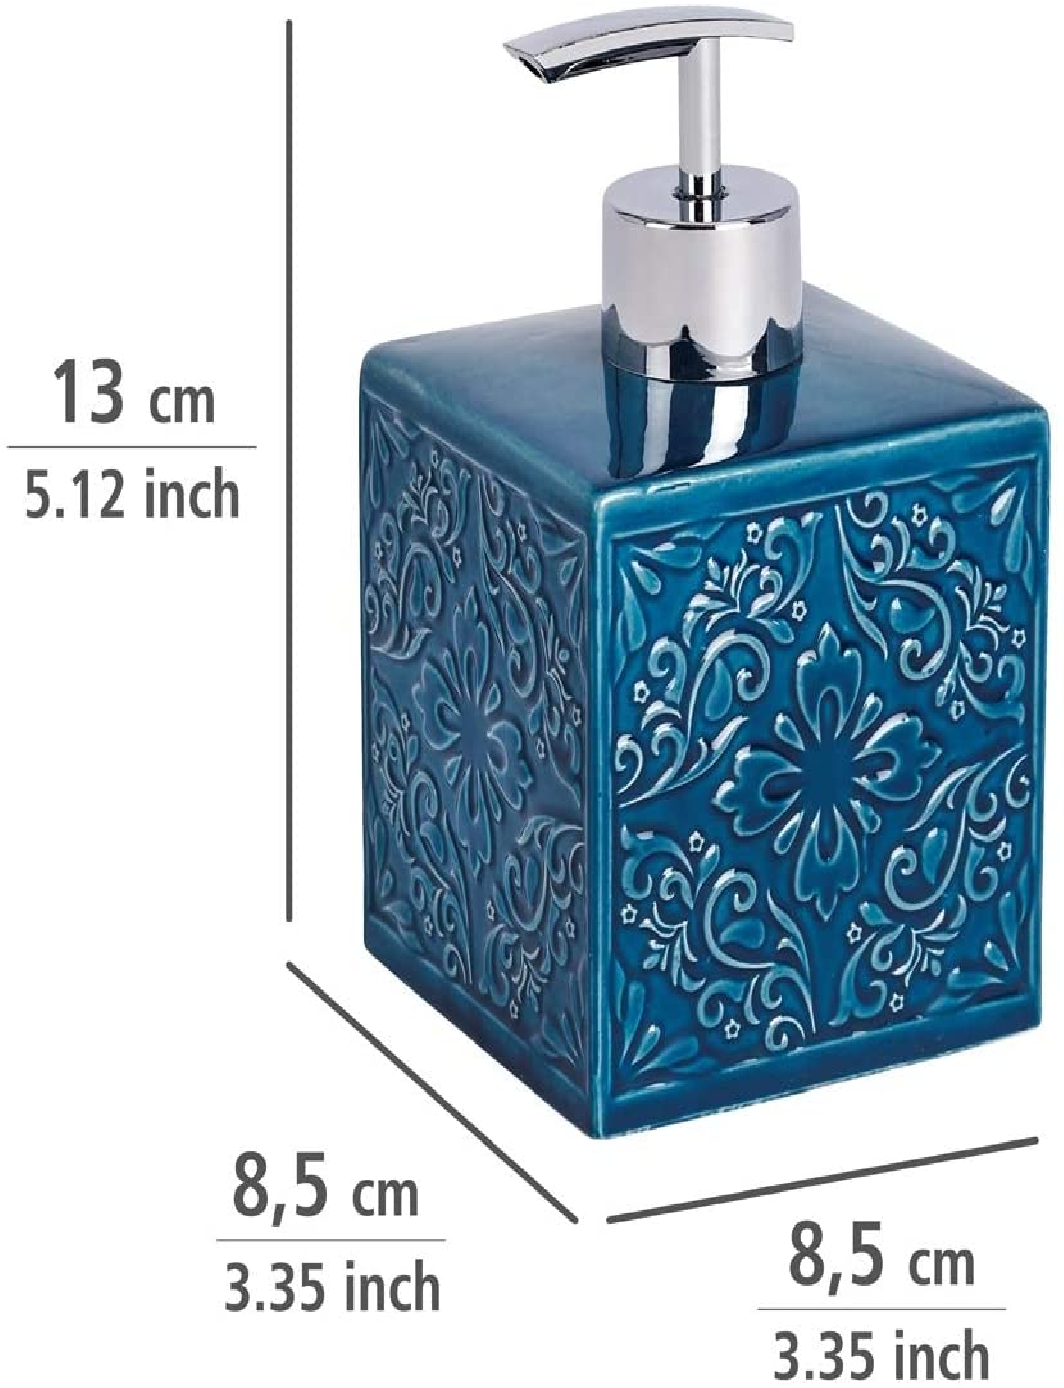 Seifenspender Cordoba Blau Keramik - Flüssigseifen-Spender, Spülmittel-Spender Fassungsvermögen: 0.5 l, Keramik, 8.5 x 13 x 8.5 cm, Blau